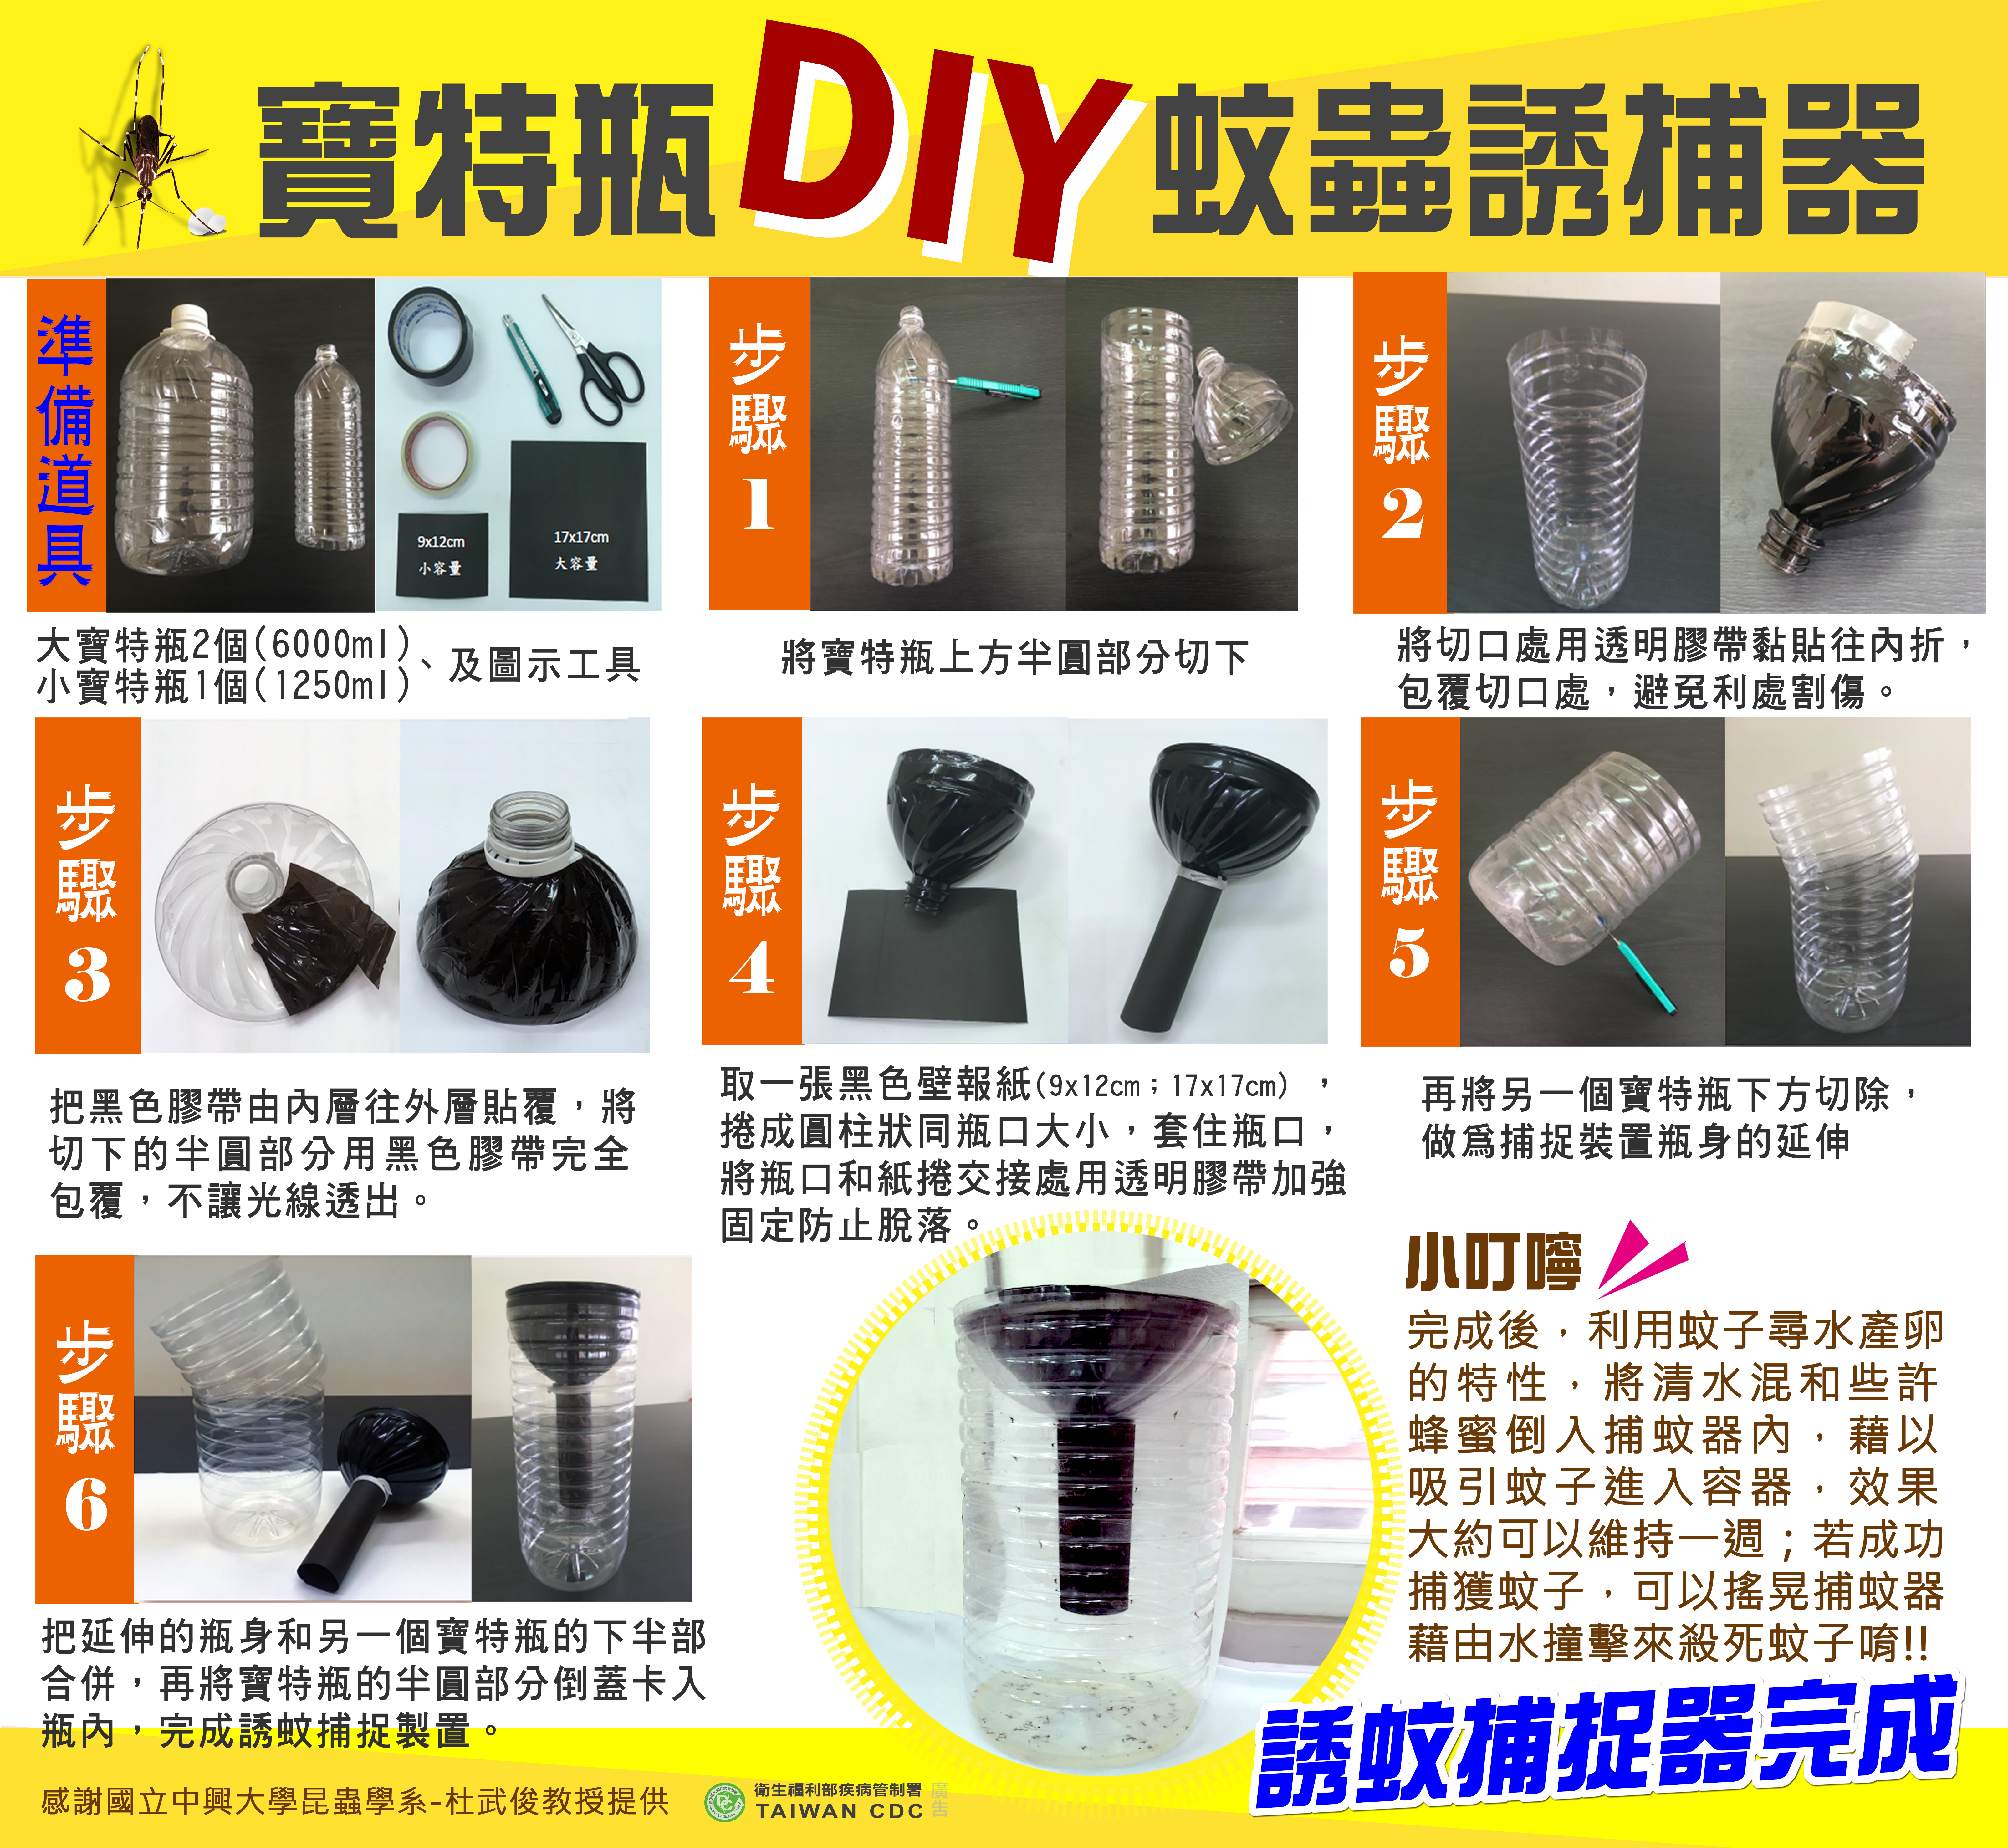 寶特瓶DIY蚊蟲誘捕器，製作說明如上文。